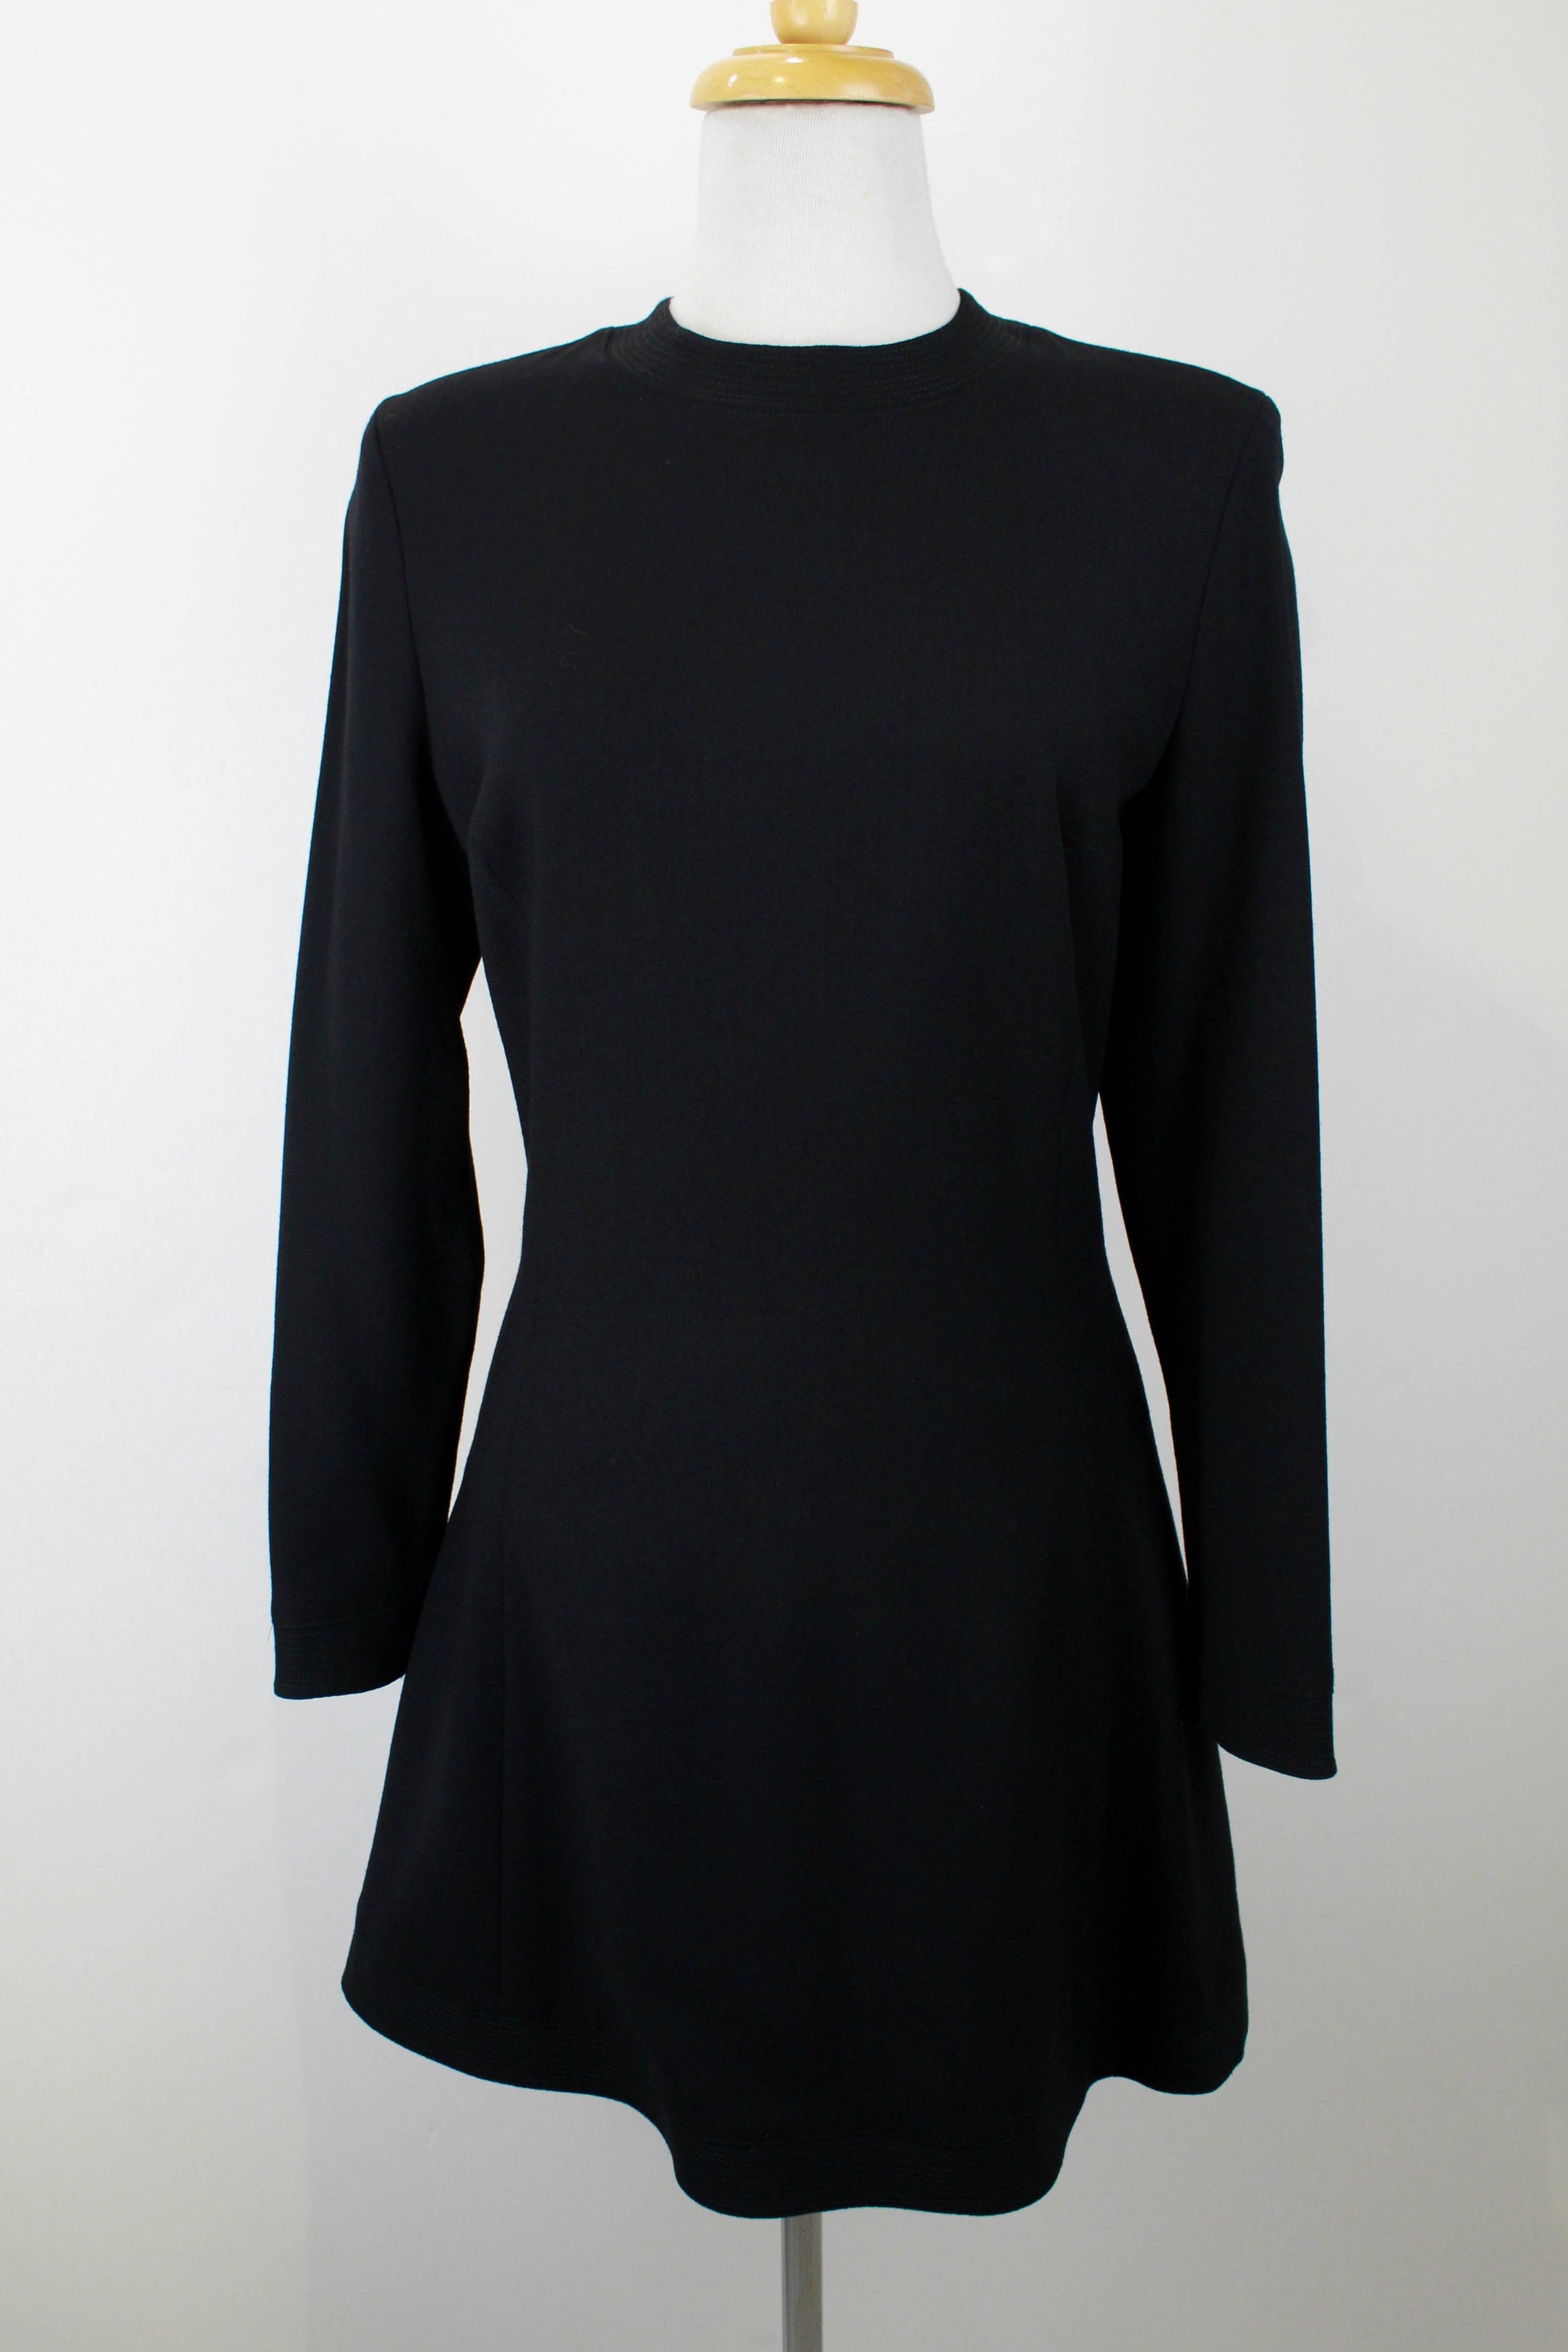 Vintage 1990s Deadstock Versus Versace Black Wool Dress, Original Tags –  Ian Drummond Vintage